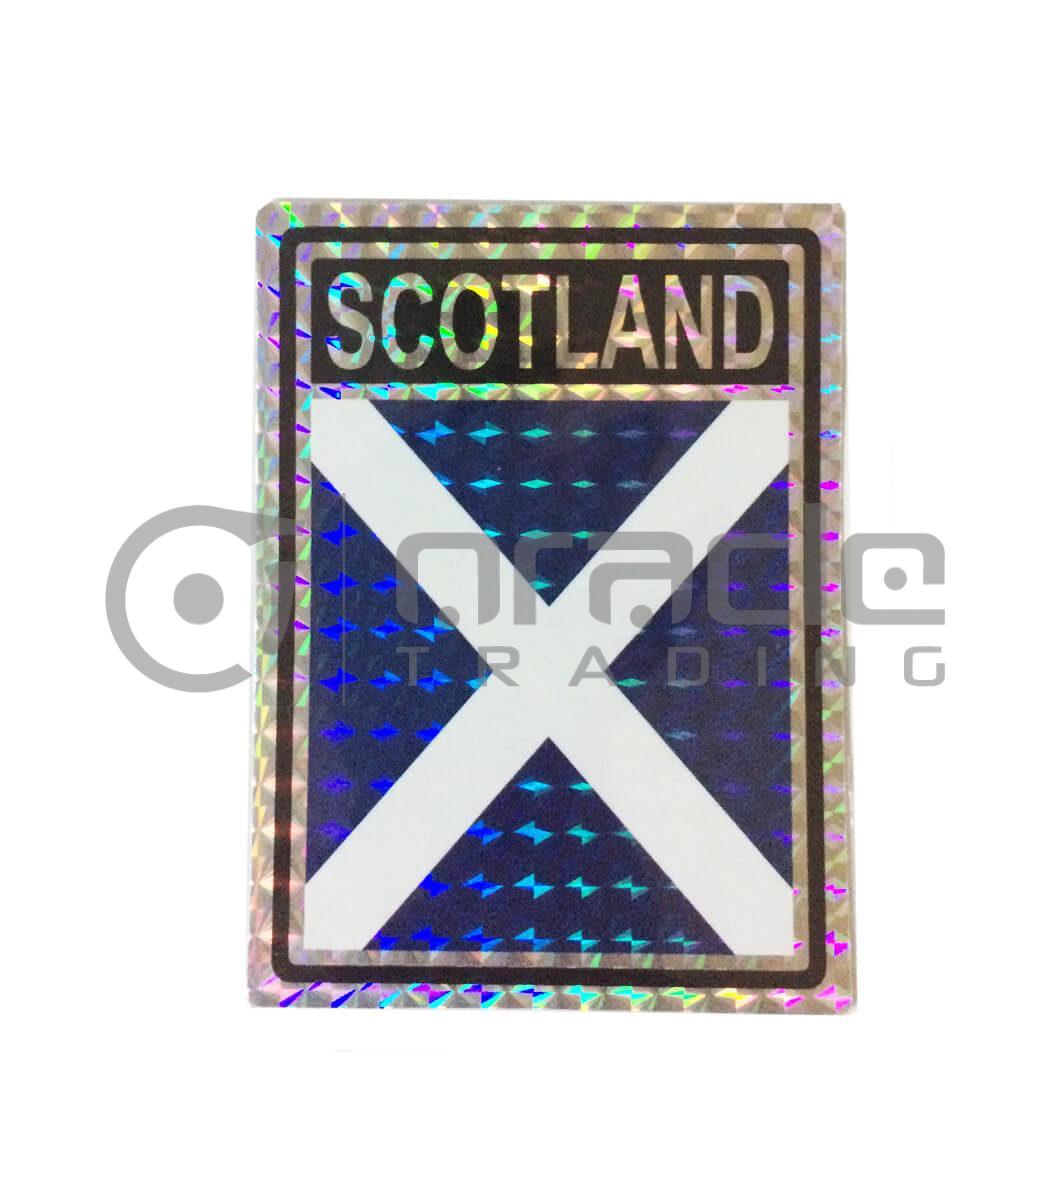 Scotland Square Bumper Sticker (St. Andrew's Cross)